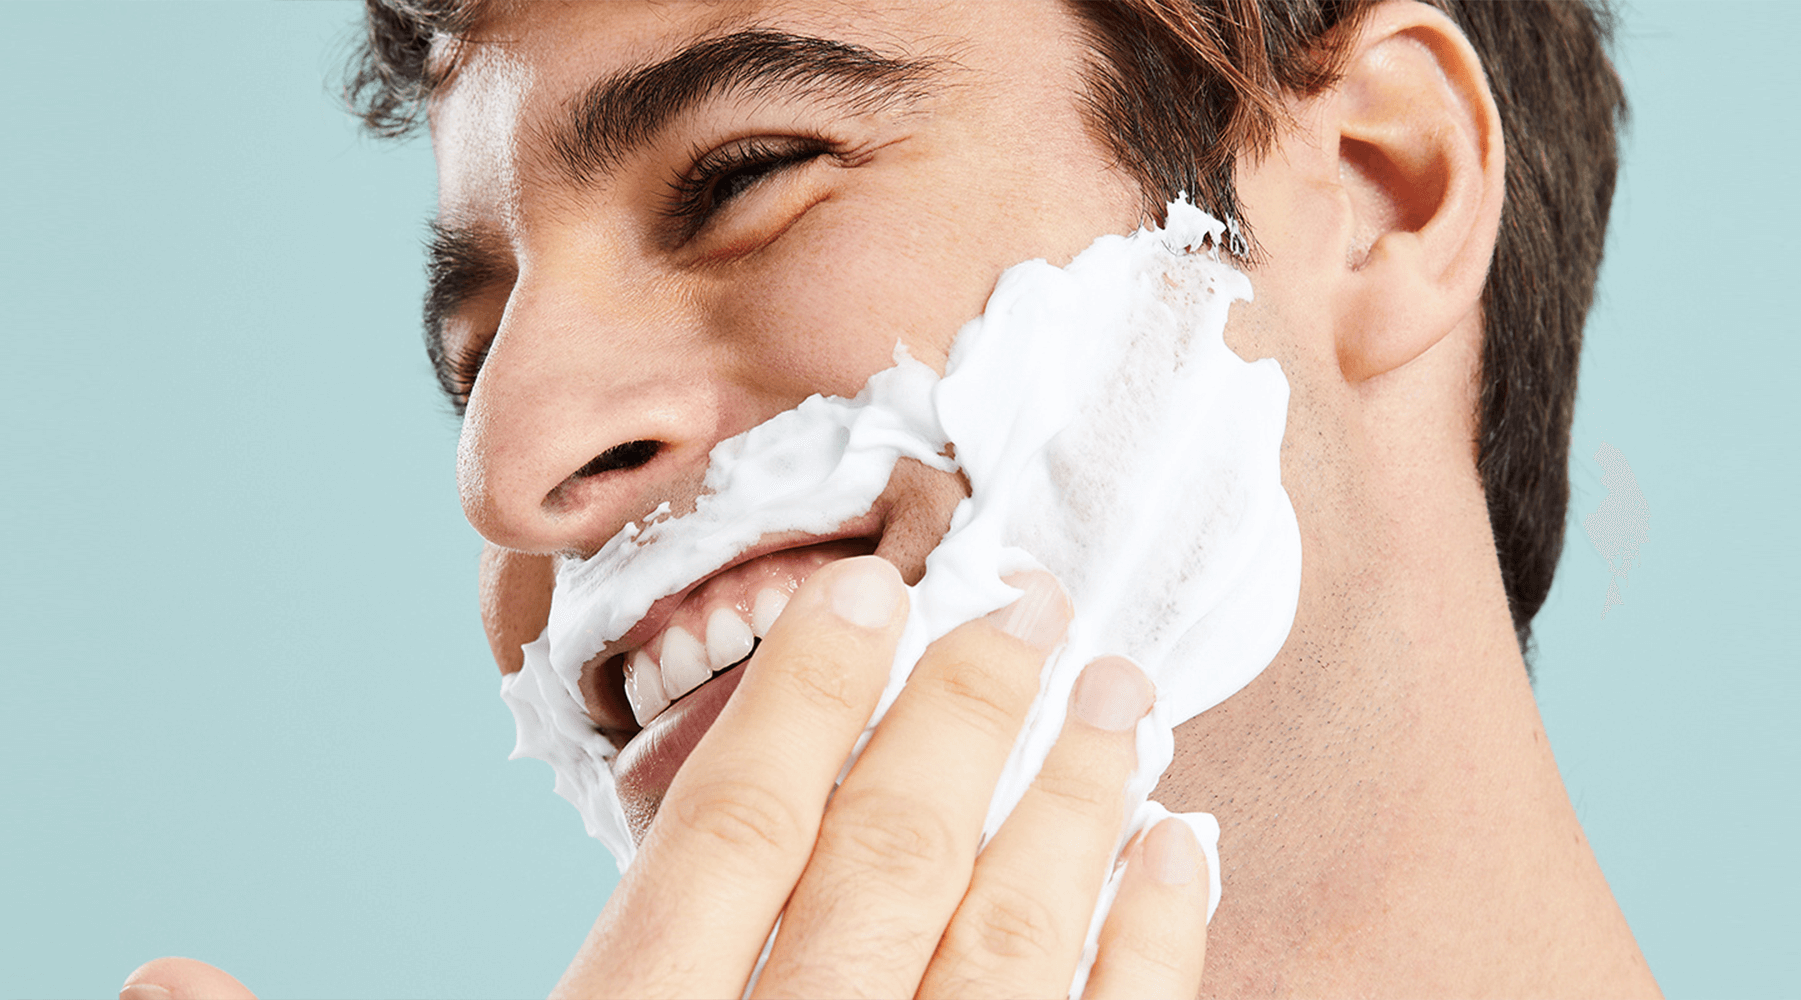 Persona colocandose espuma de afeitar sobre el rostro